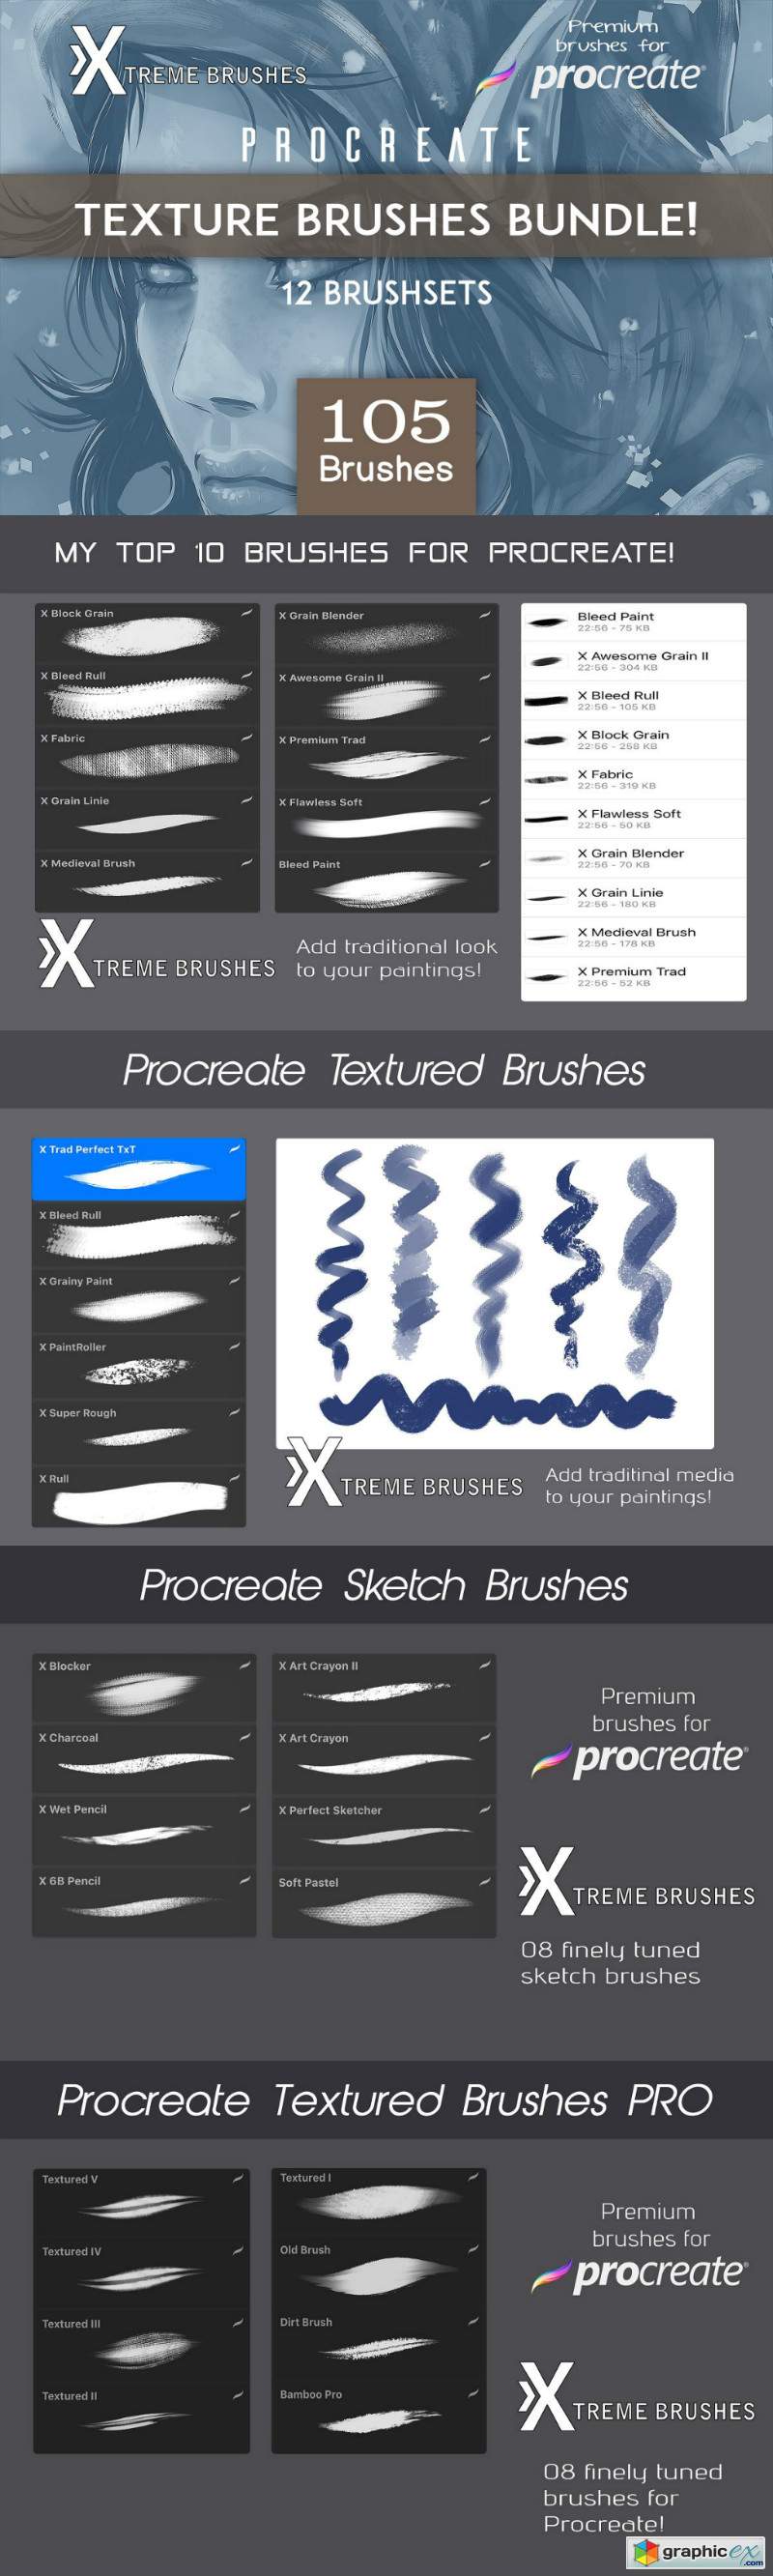 Procreate Texture Brushes BUNDLE